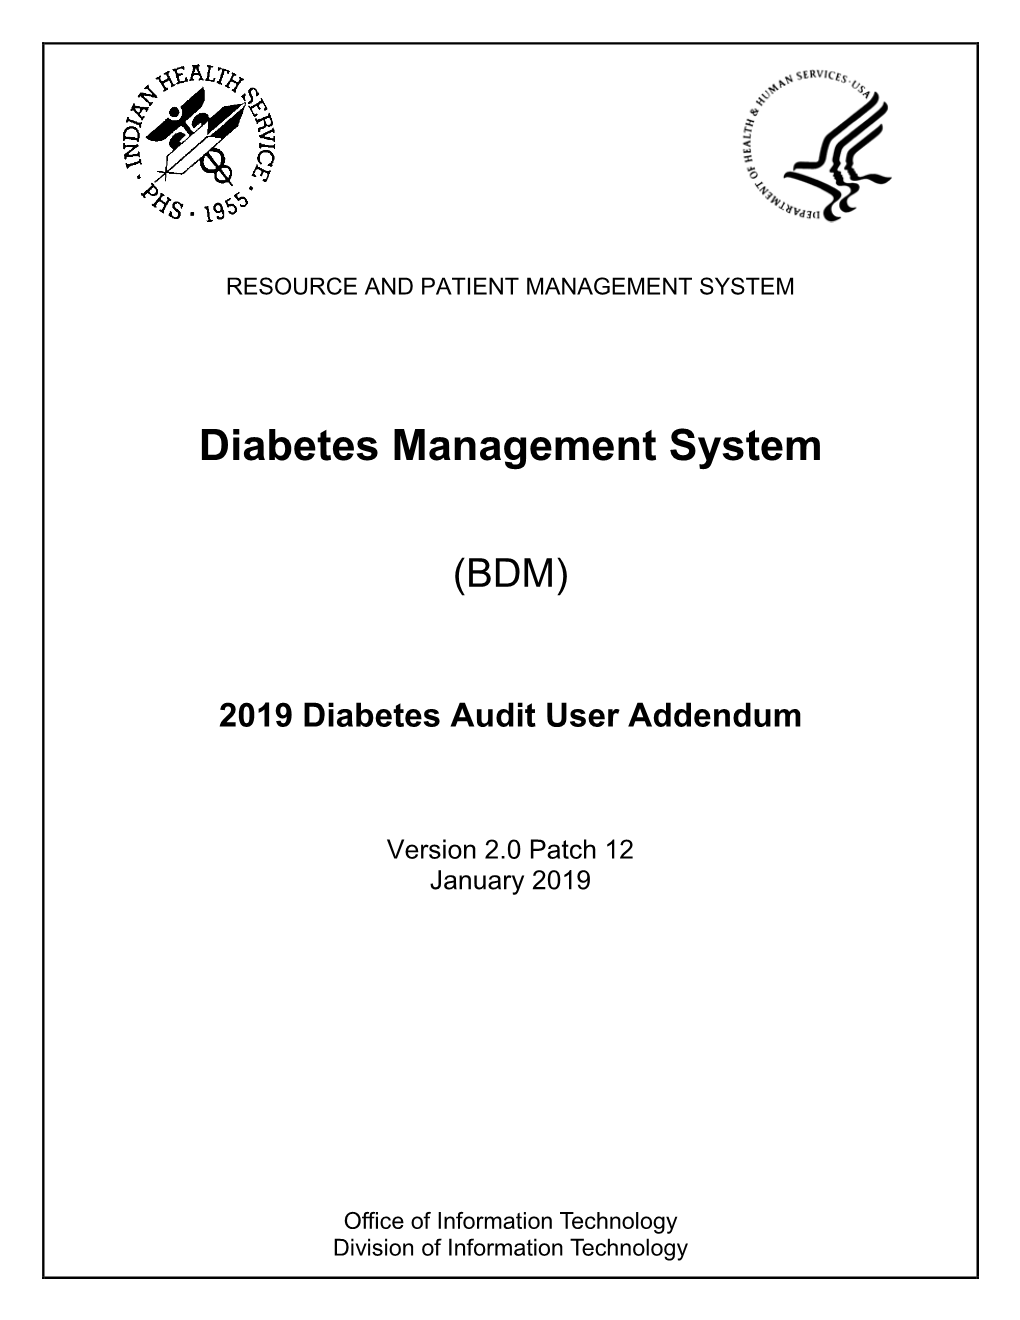 Diabetes Management System (BDM) Version 2.0 Patch 12